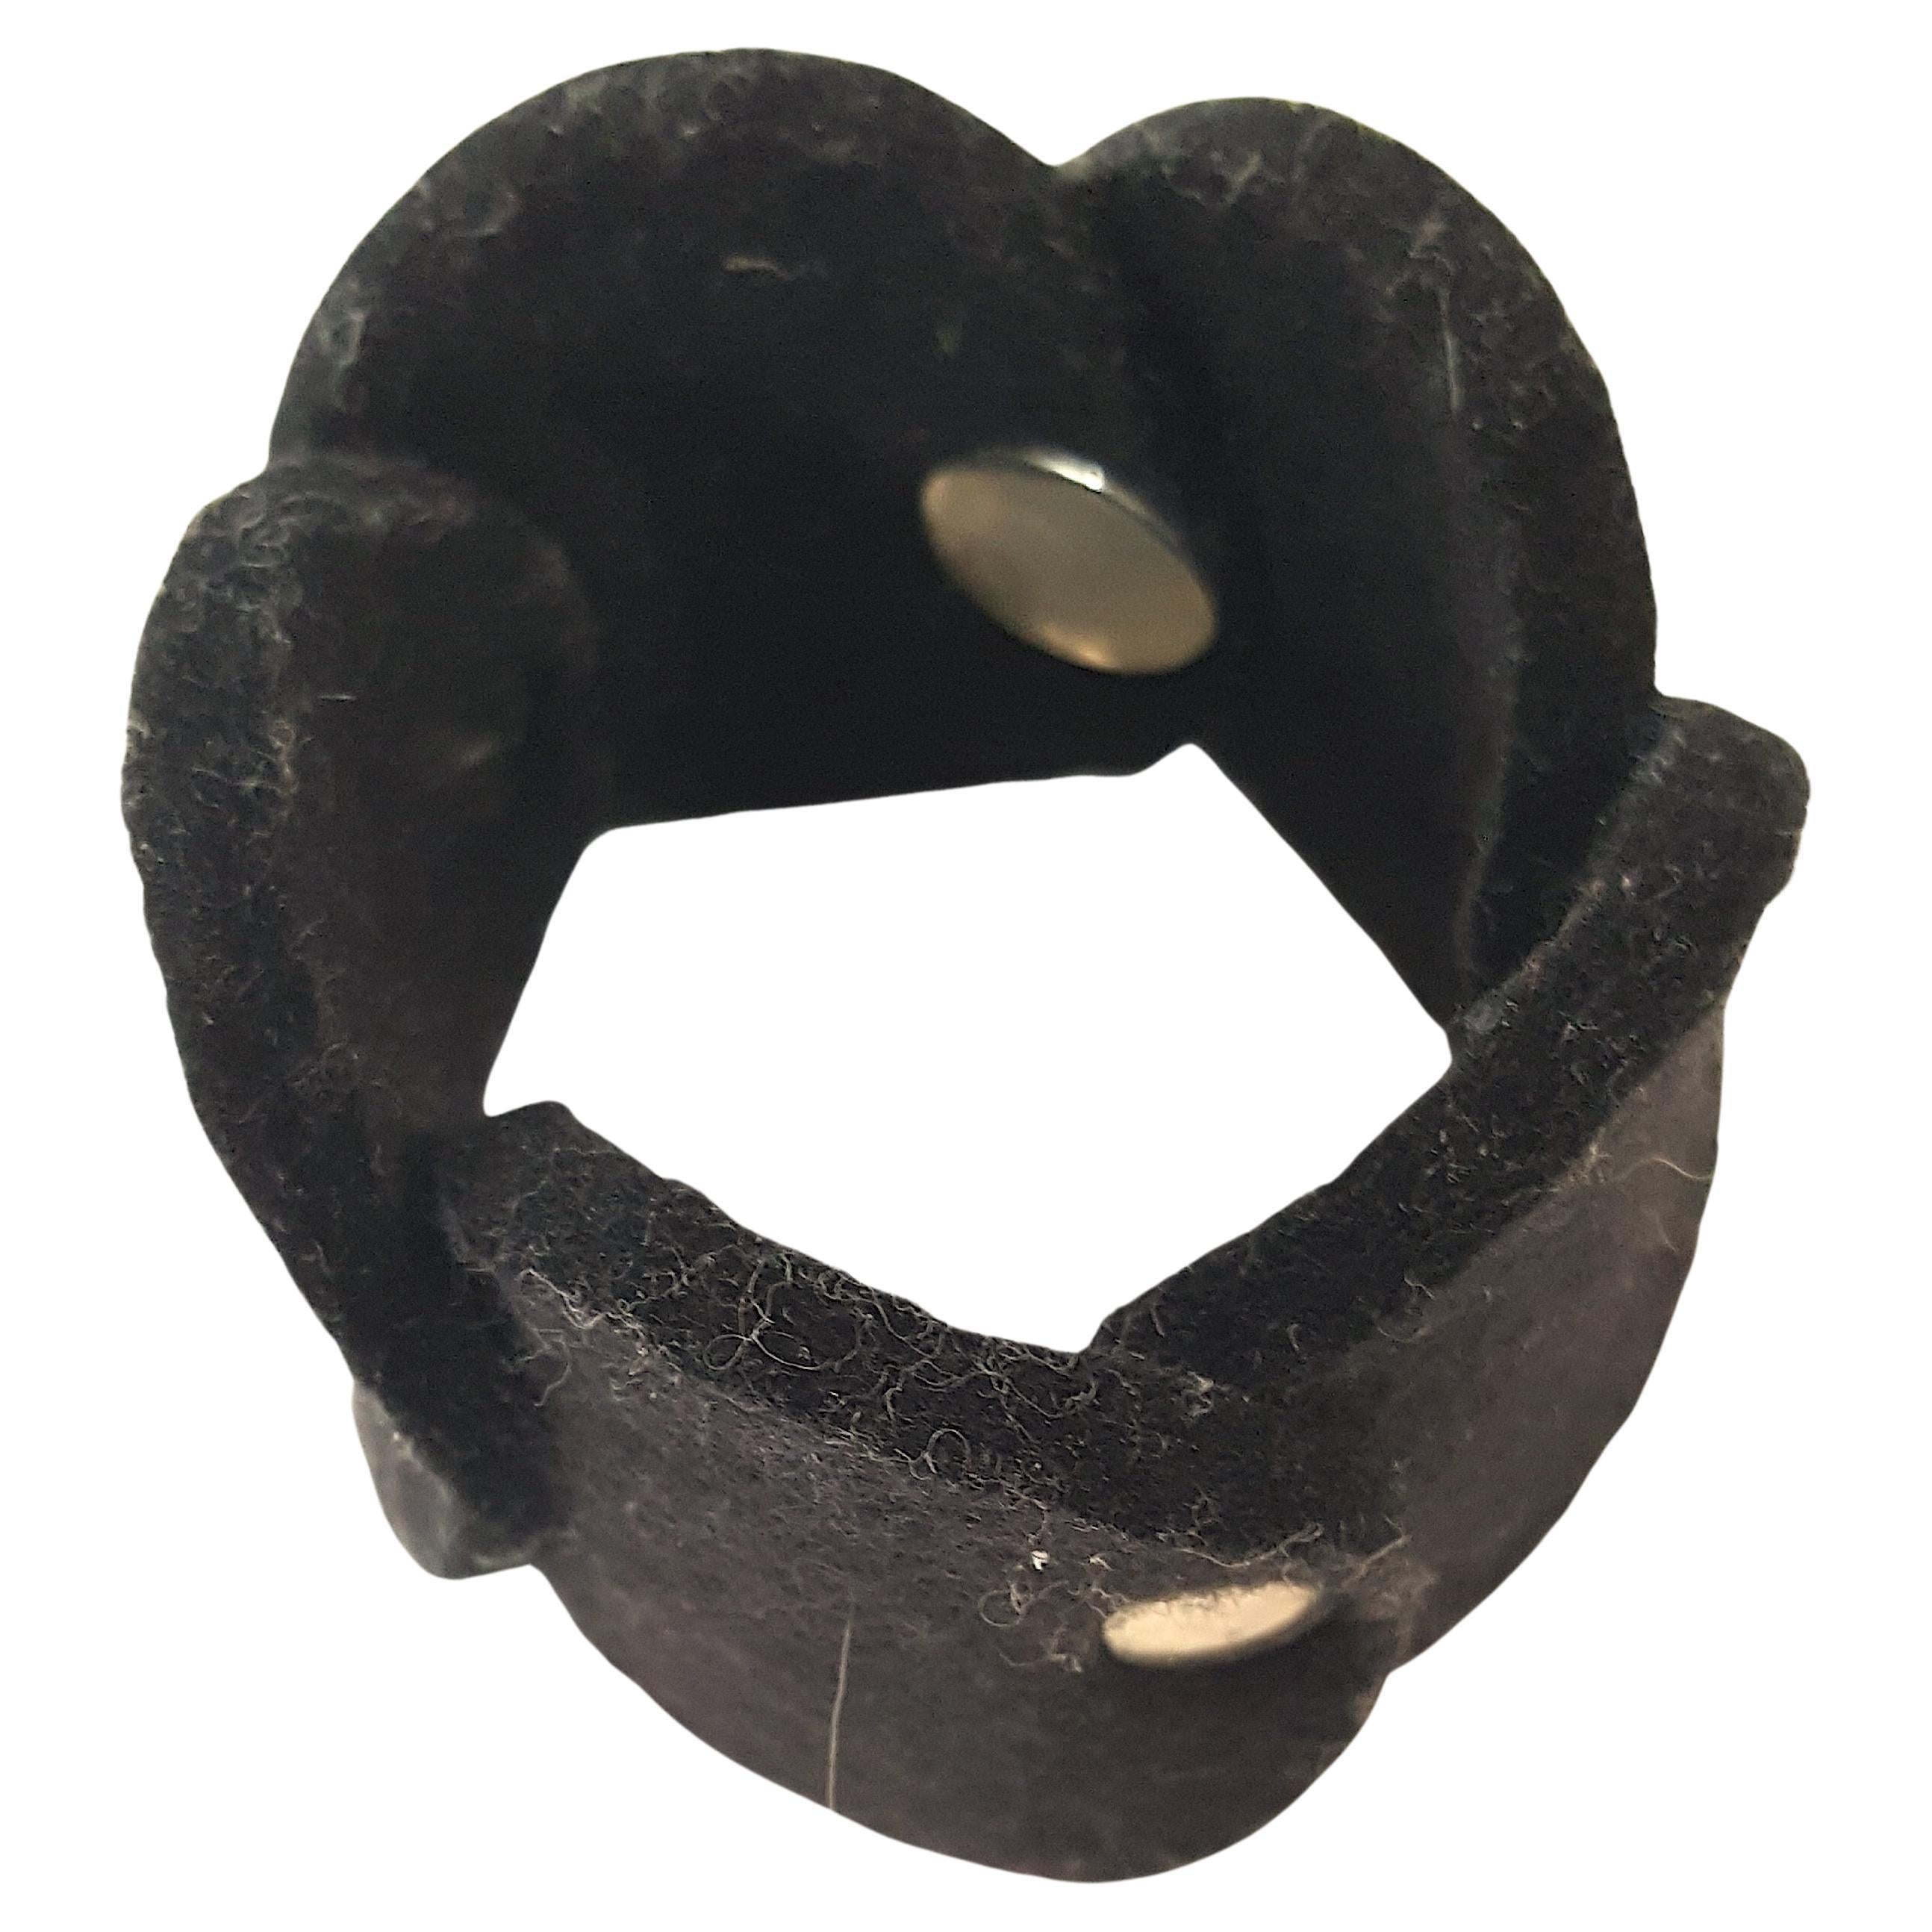 L'artiste suédoise Pia Wallen a réalisé ce bracelet moderne et audacieux à maillons noirs à disques superposés à partir de son emblématique bracelet à maillons épais. 
100% feutre de laine, qui est assemblé avec des ferrures rondes argentées pour la